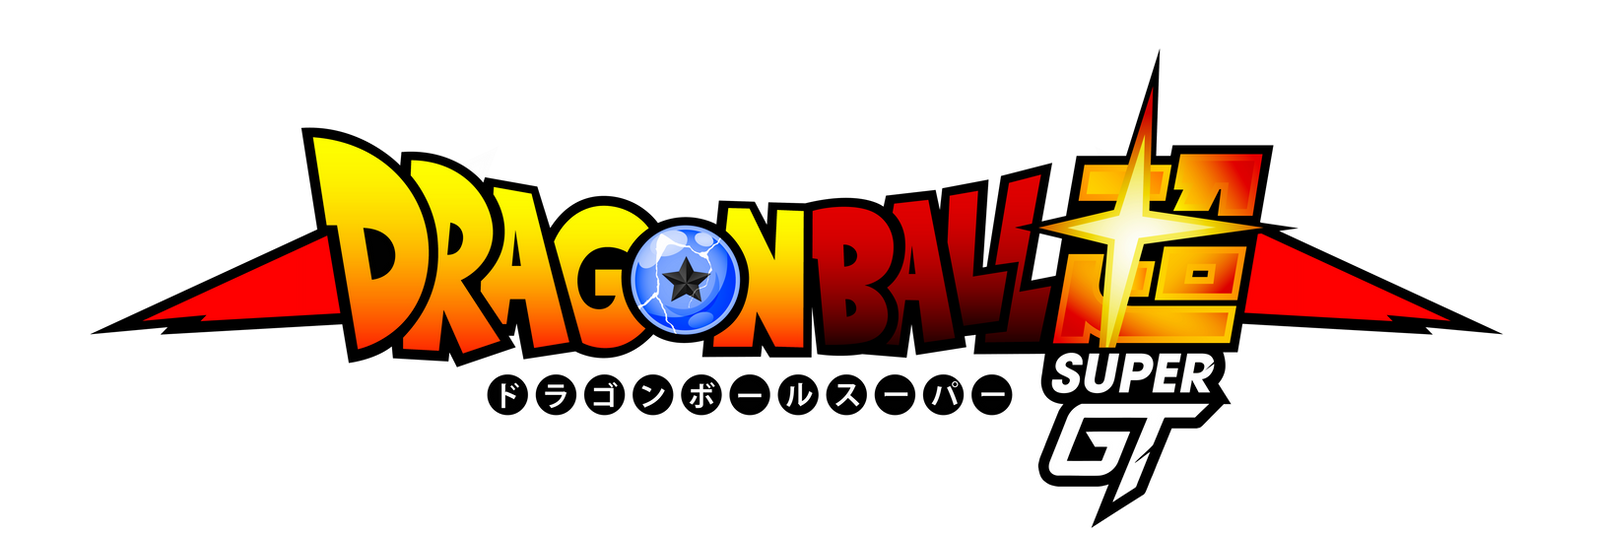 Dragonball Super GT Fan Logo by obsolete00 on DeviantArt